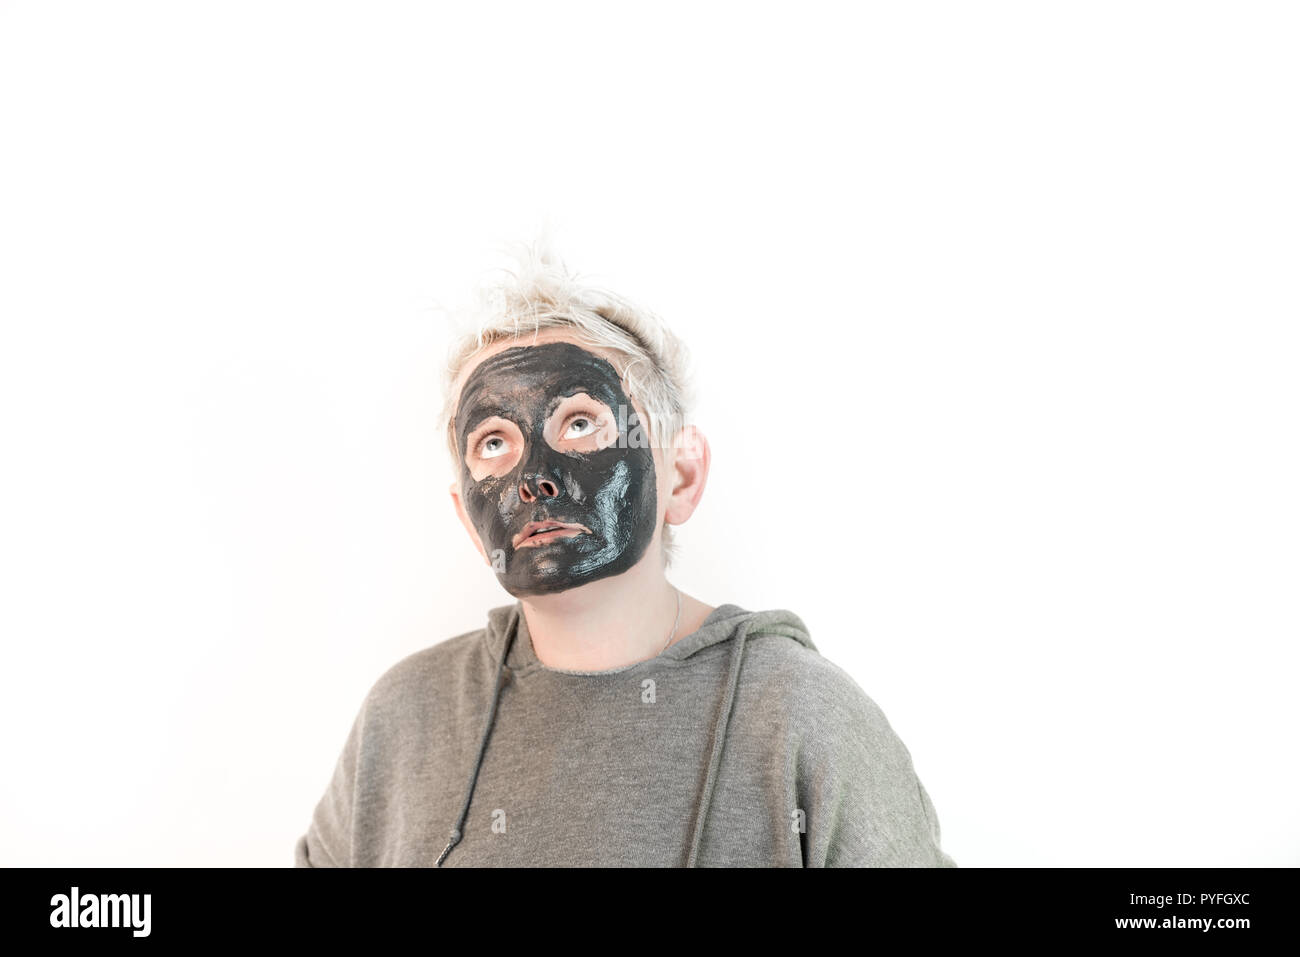 Montrer les émotions pures - visage d'une femme avec un masque noir montrant différentes émotions Banque D'Images